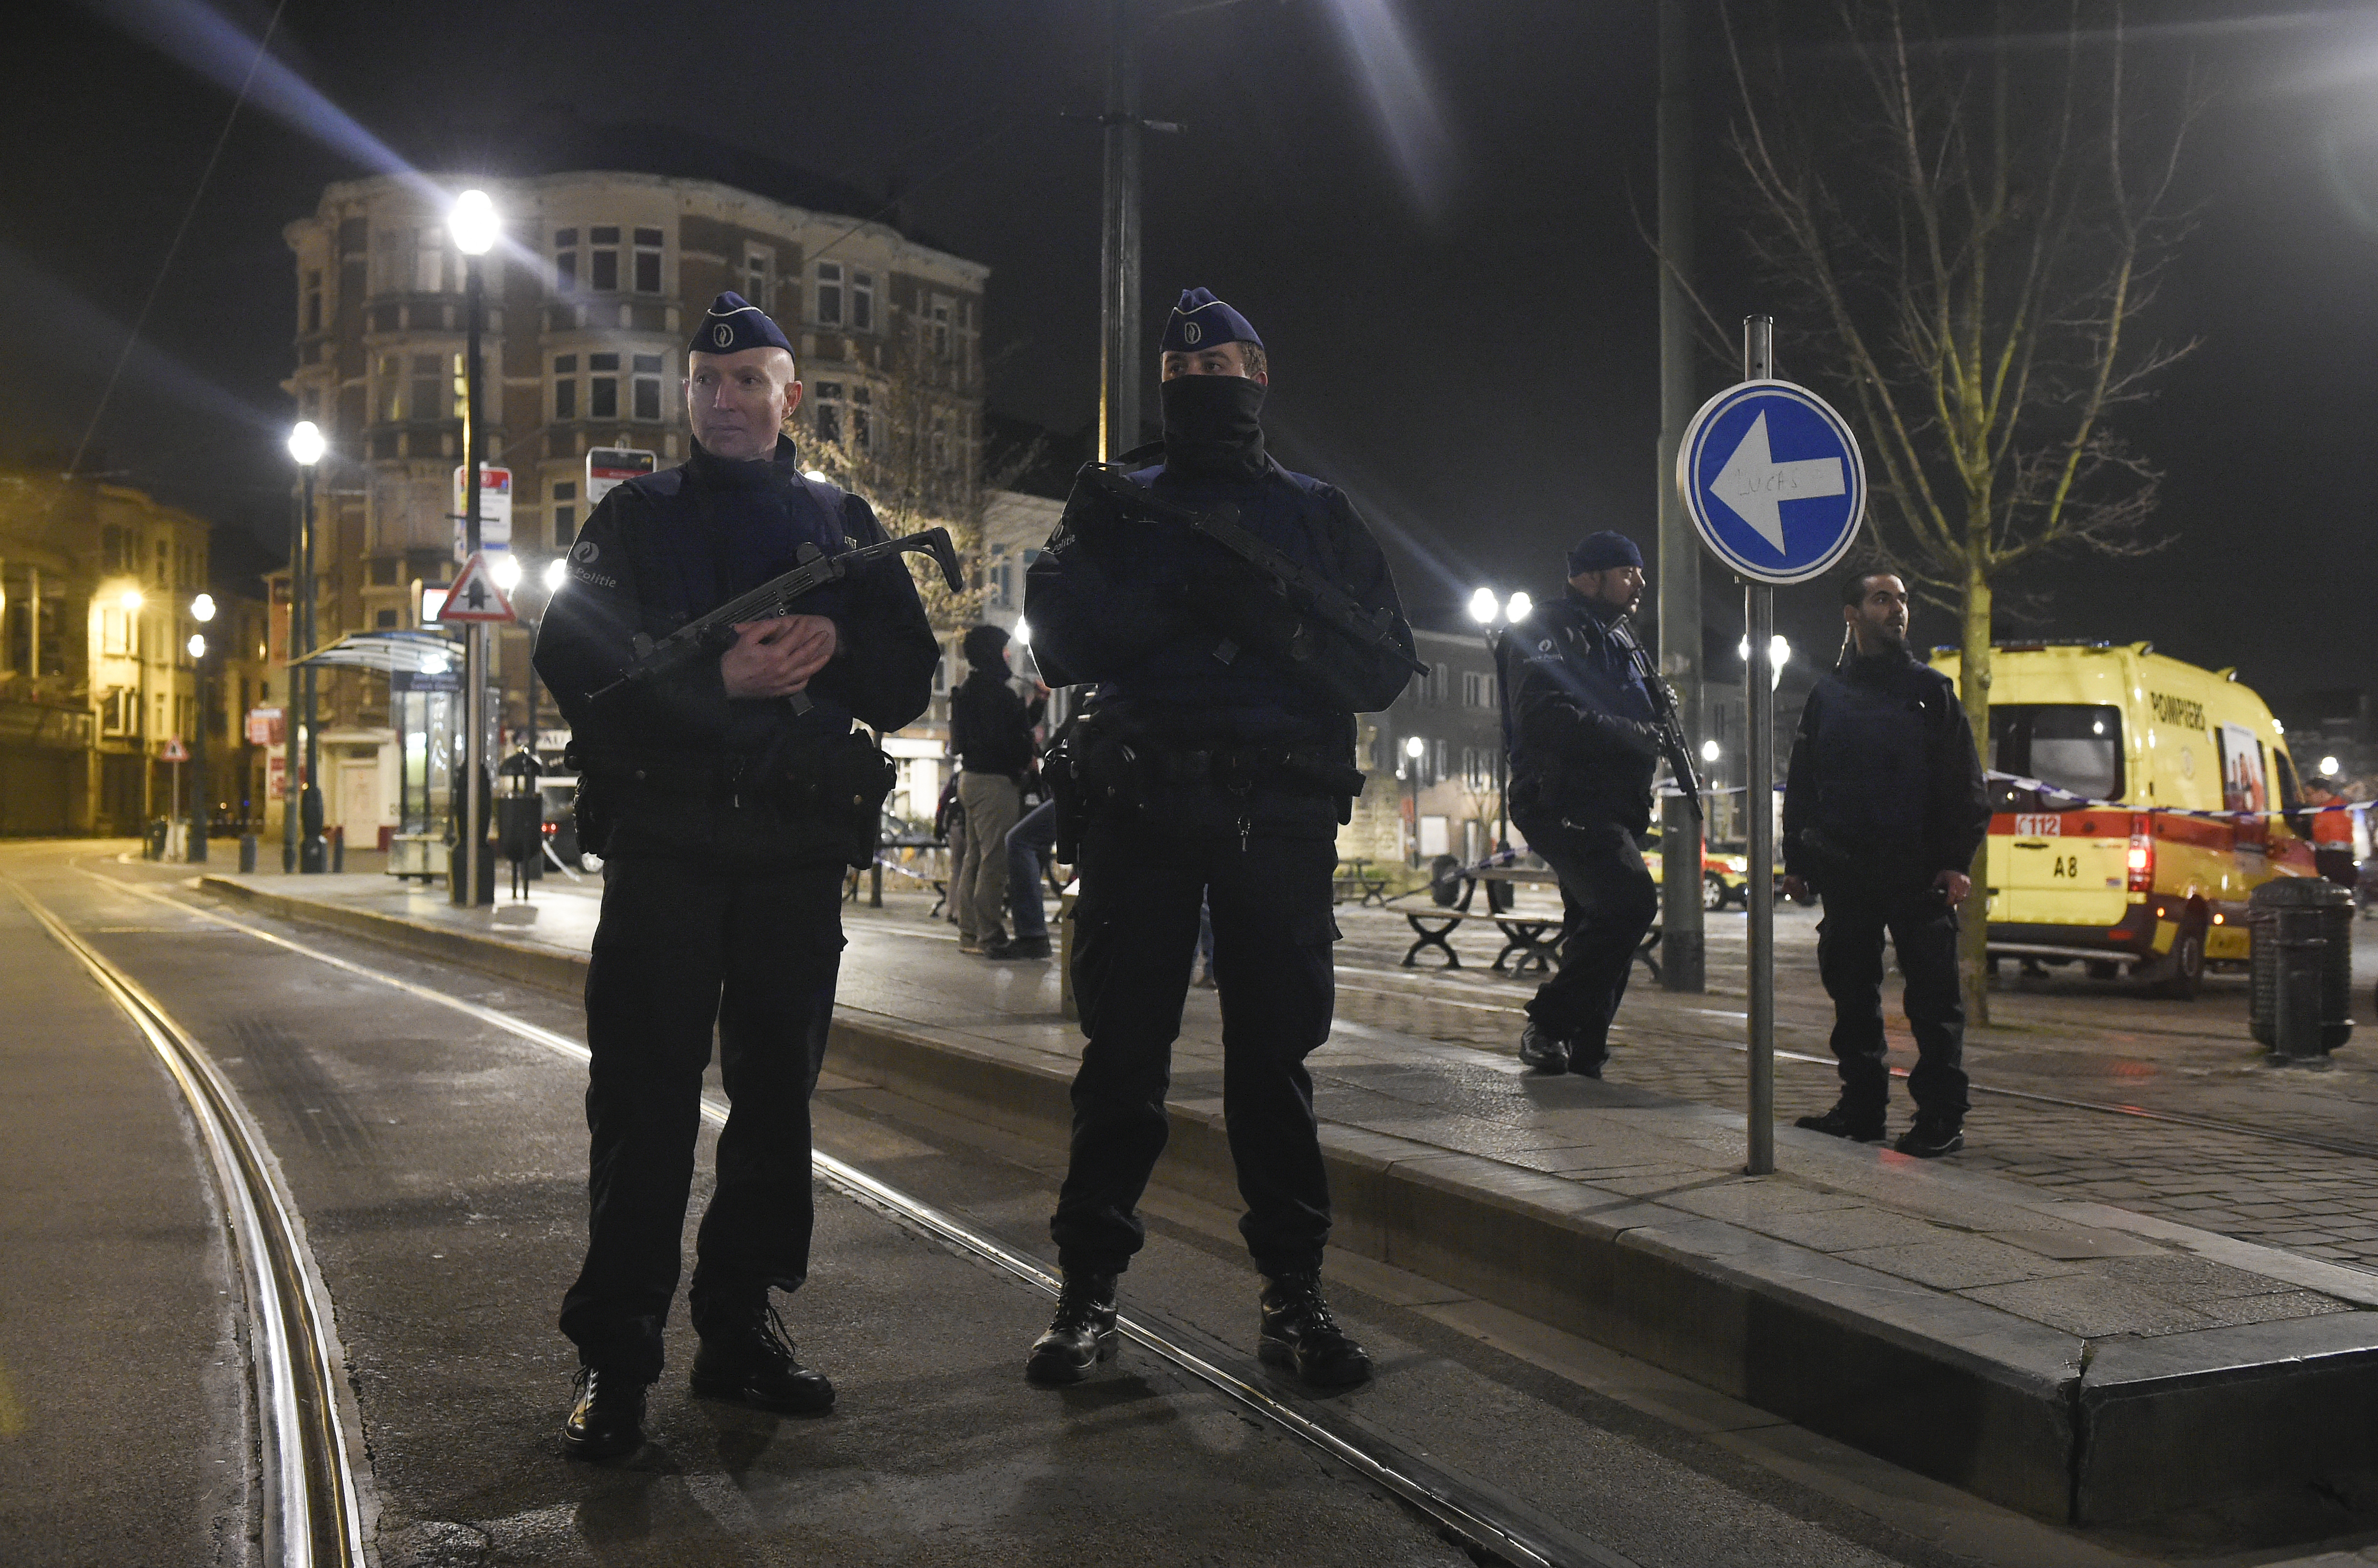 Merényletekre készülő terroristákat tartóztattak le Párizsban